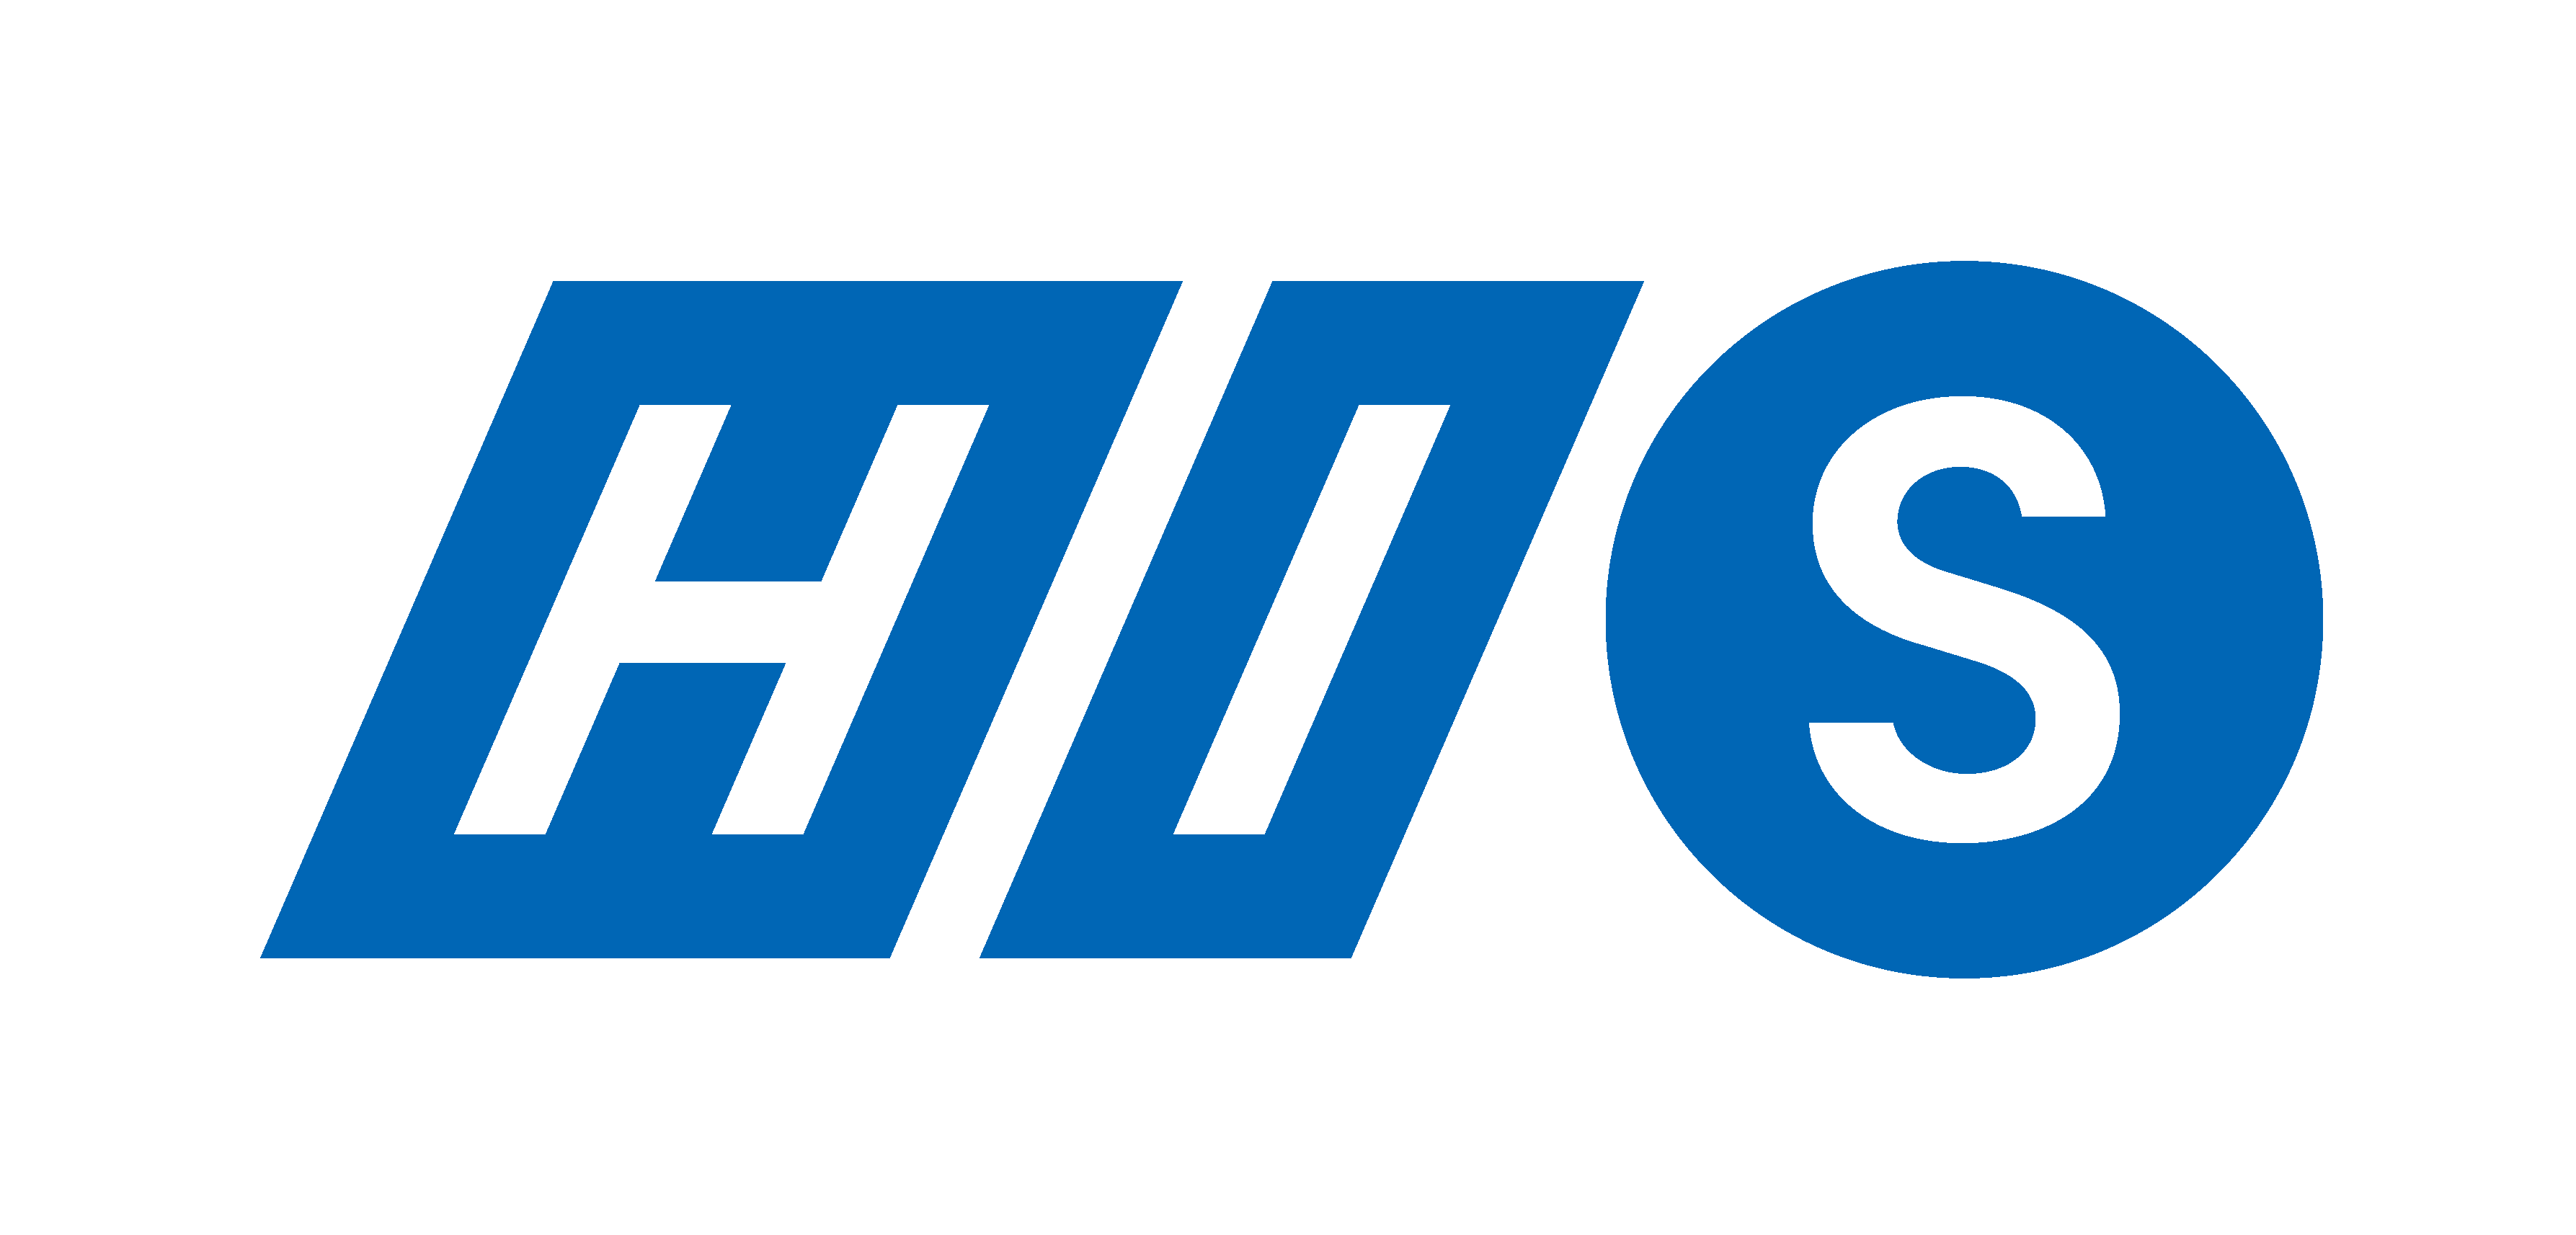 HIS logo